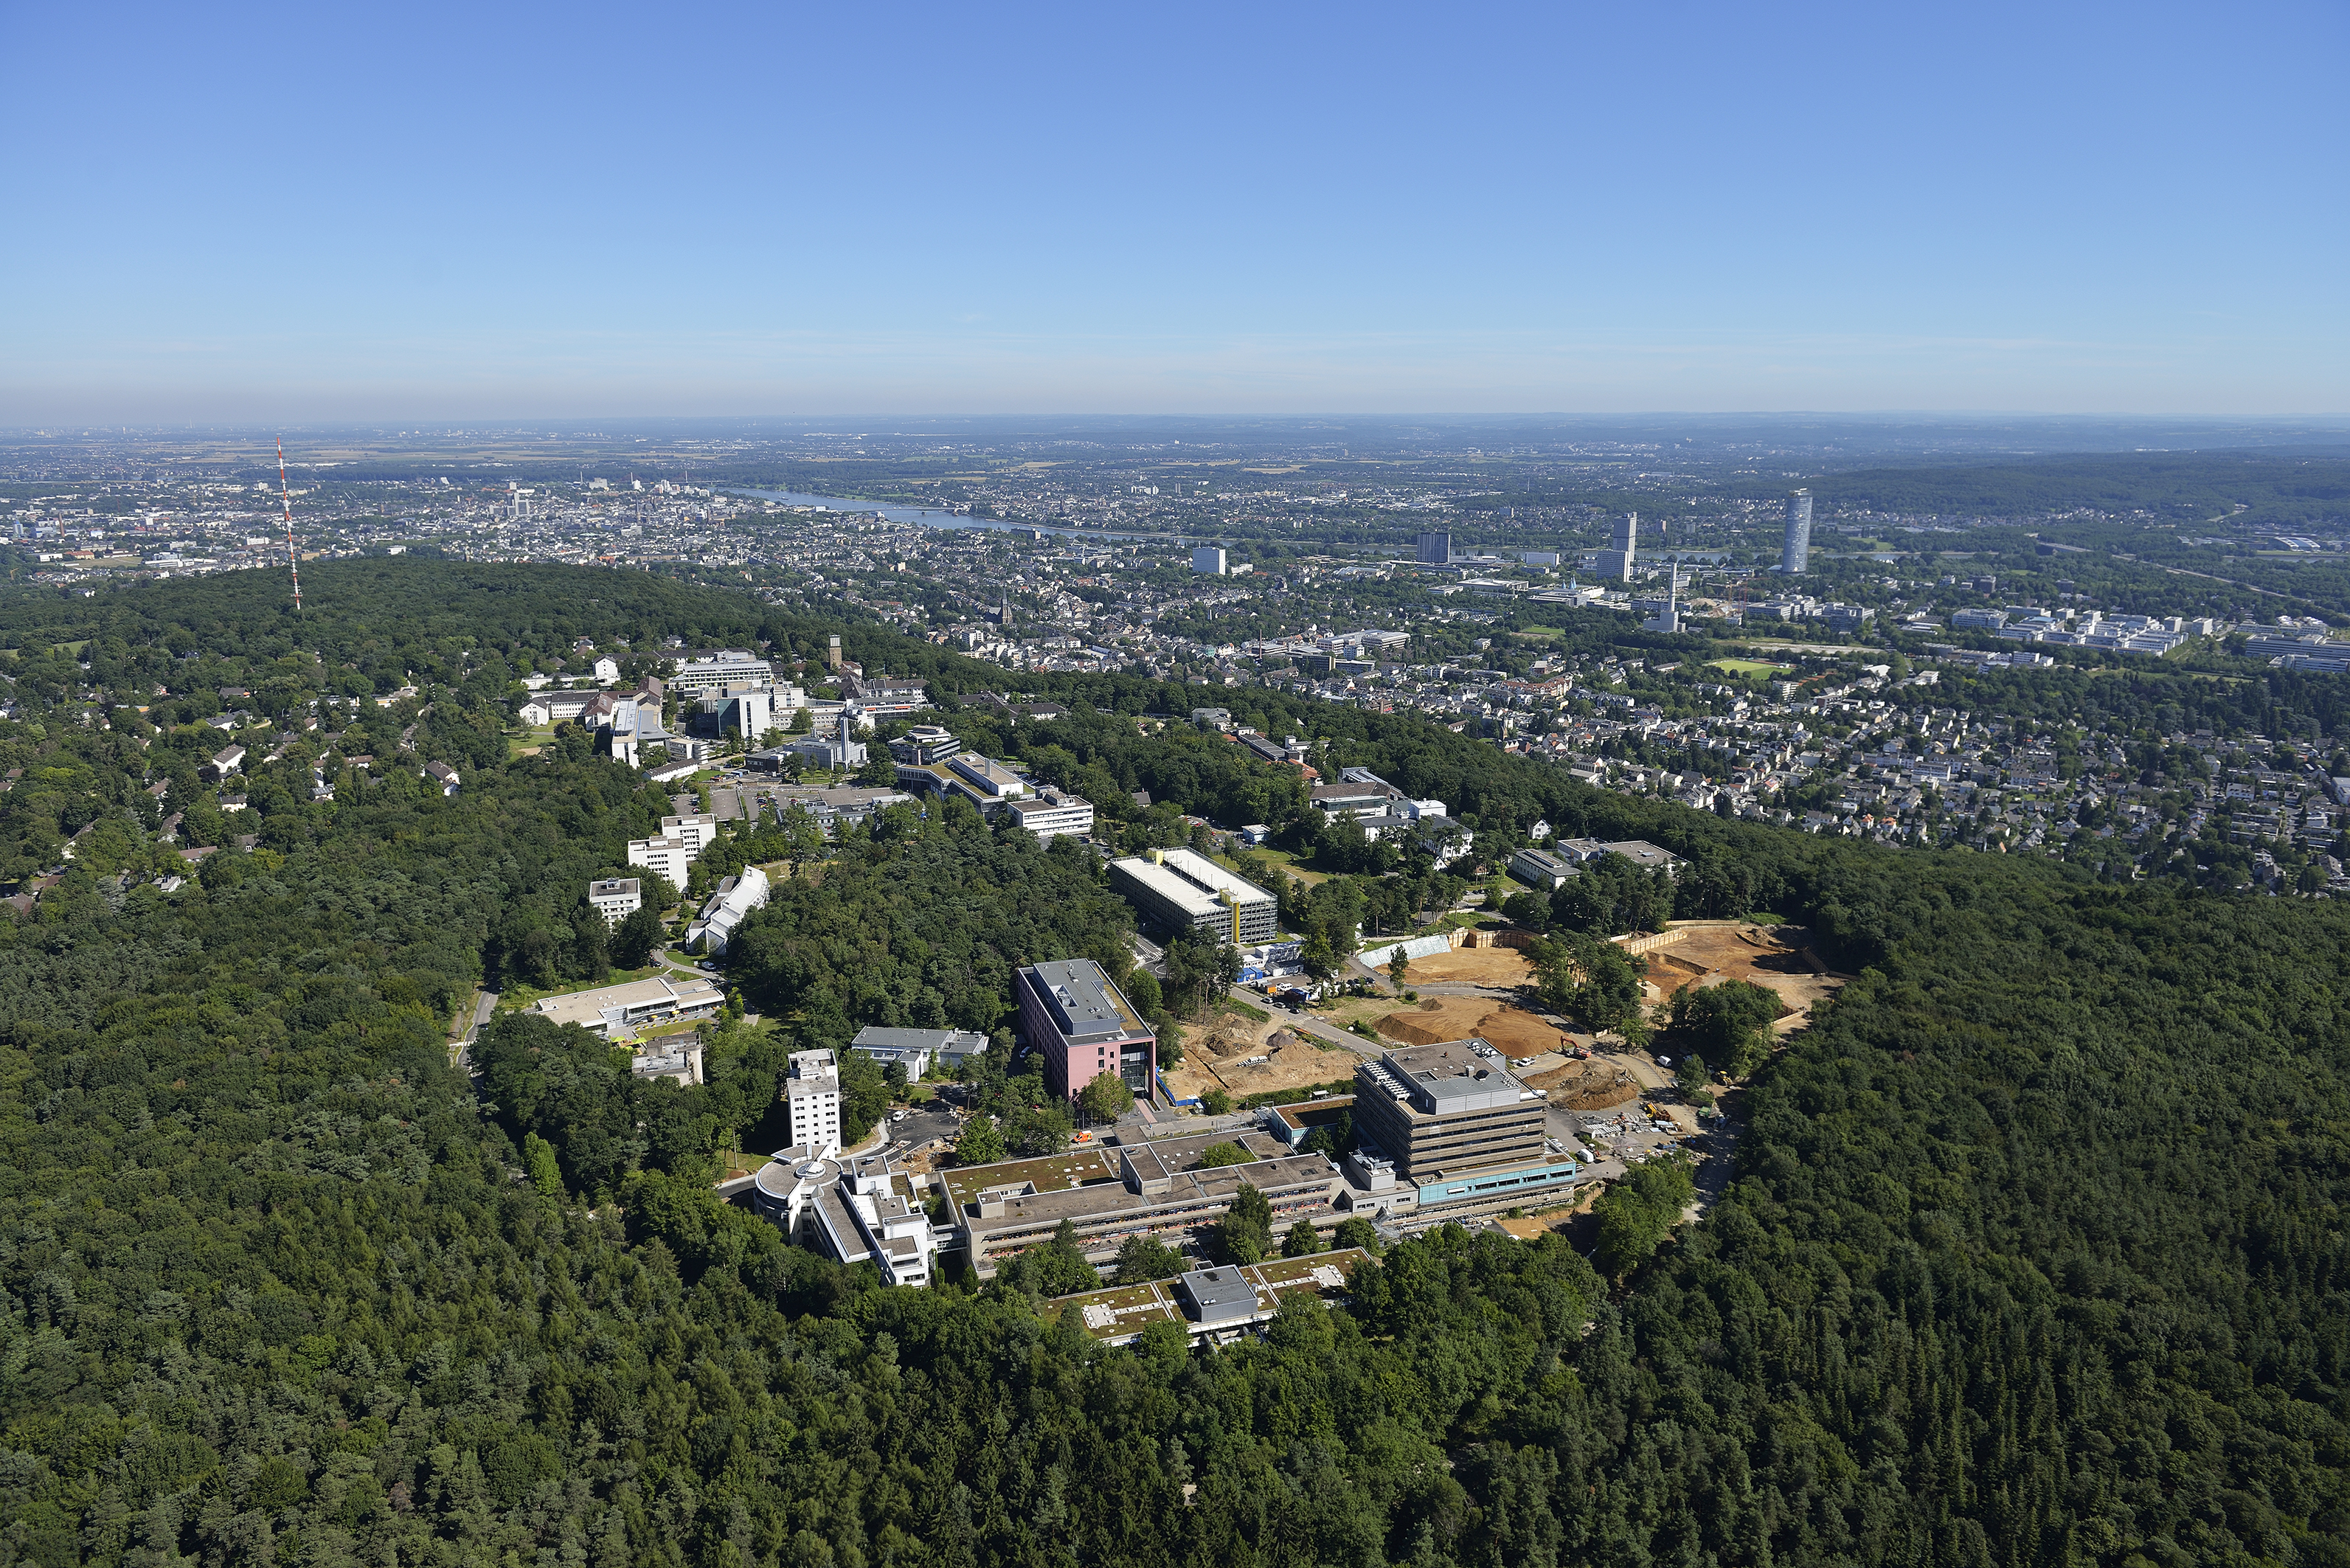 Luftbilder des Uniklinikums Bonn vom 2013-08-01